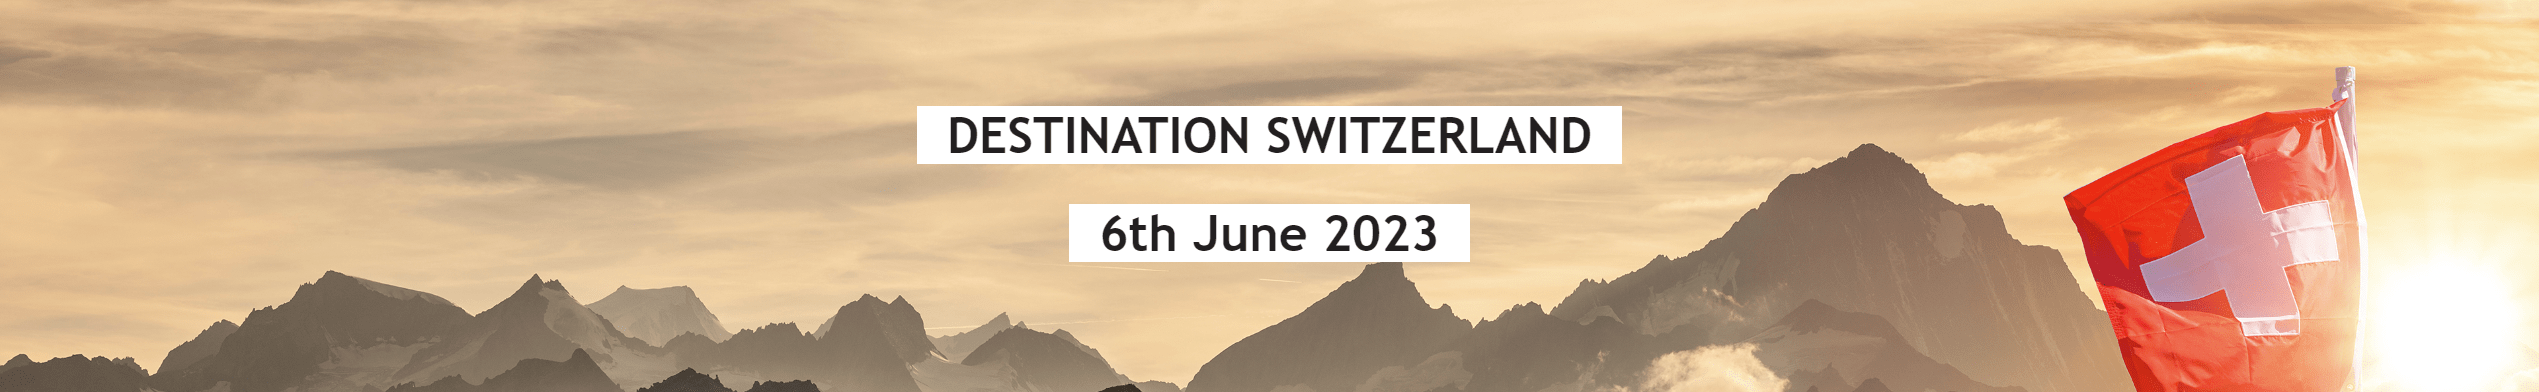 Destination Switzerland, 06 June 2023